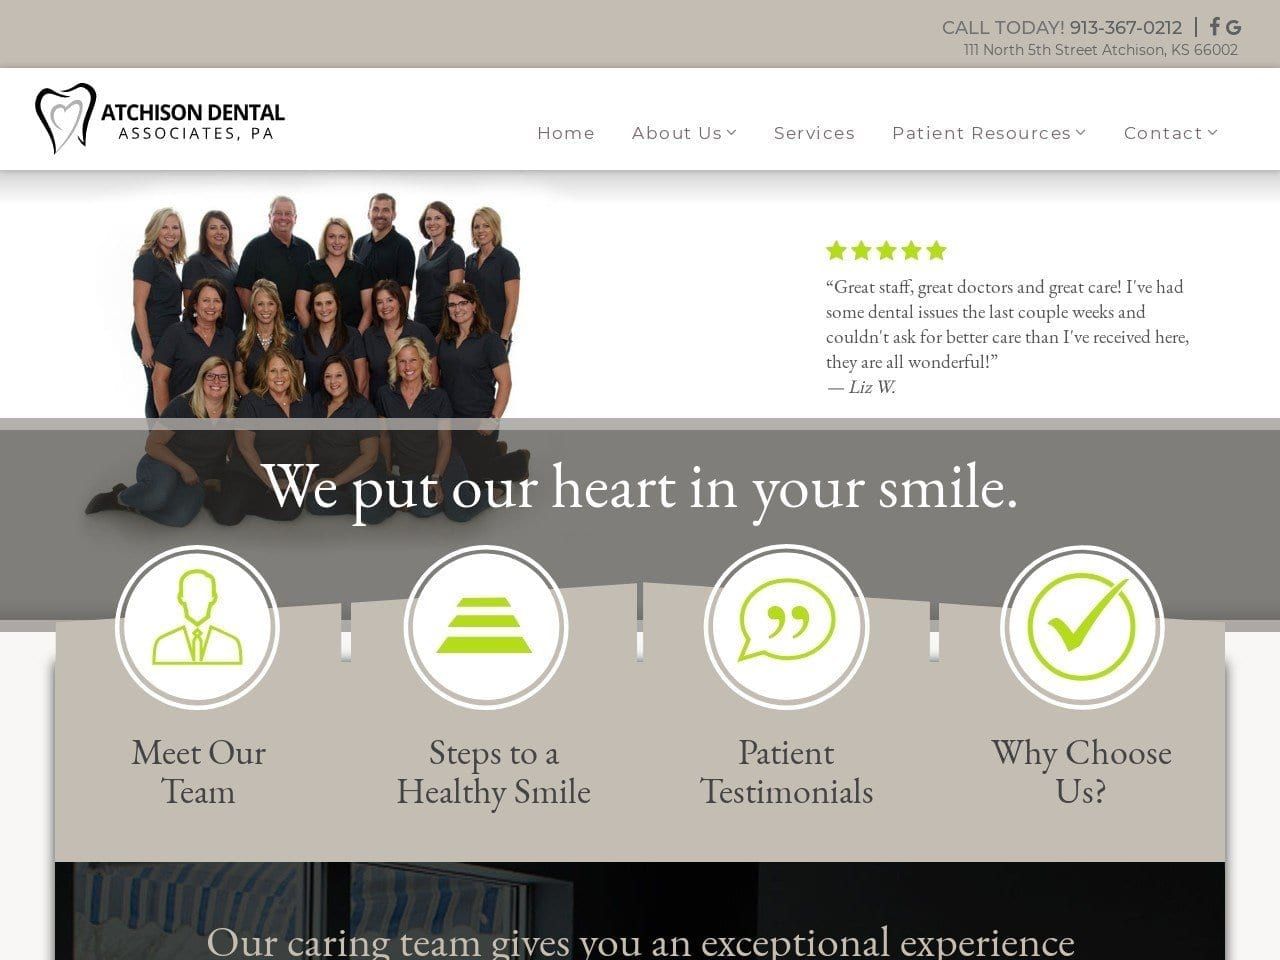 Atchison Dental Associates Website Screenshot from atchisondental.com